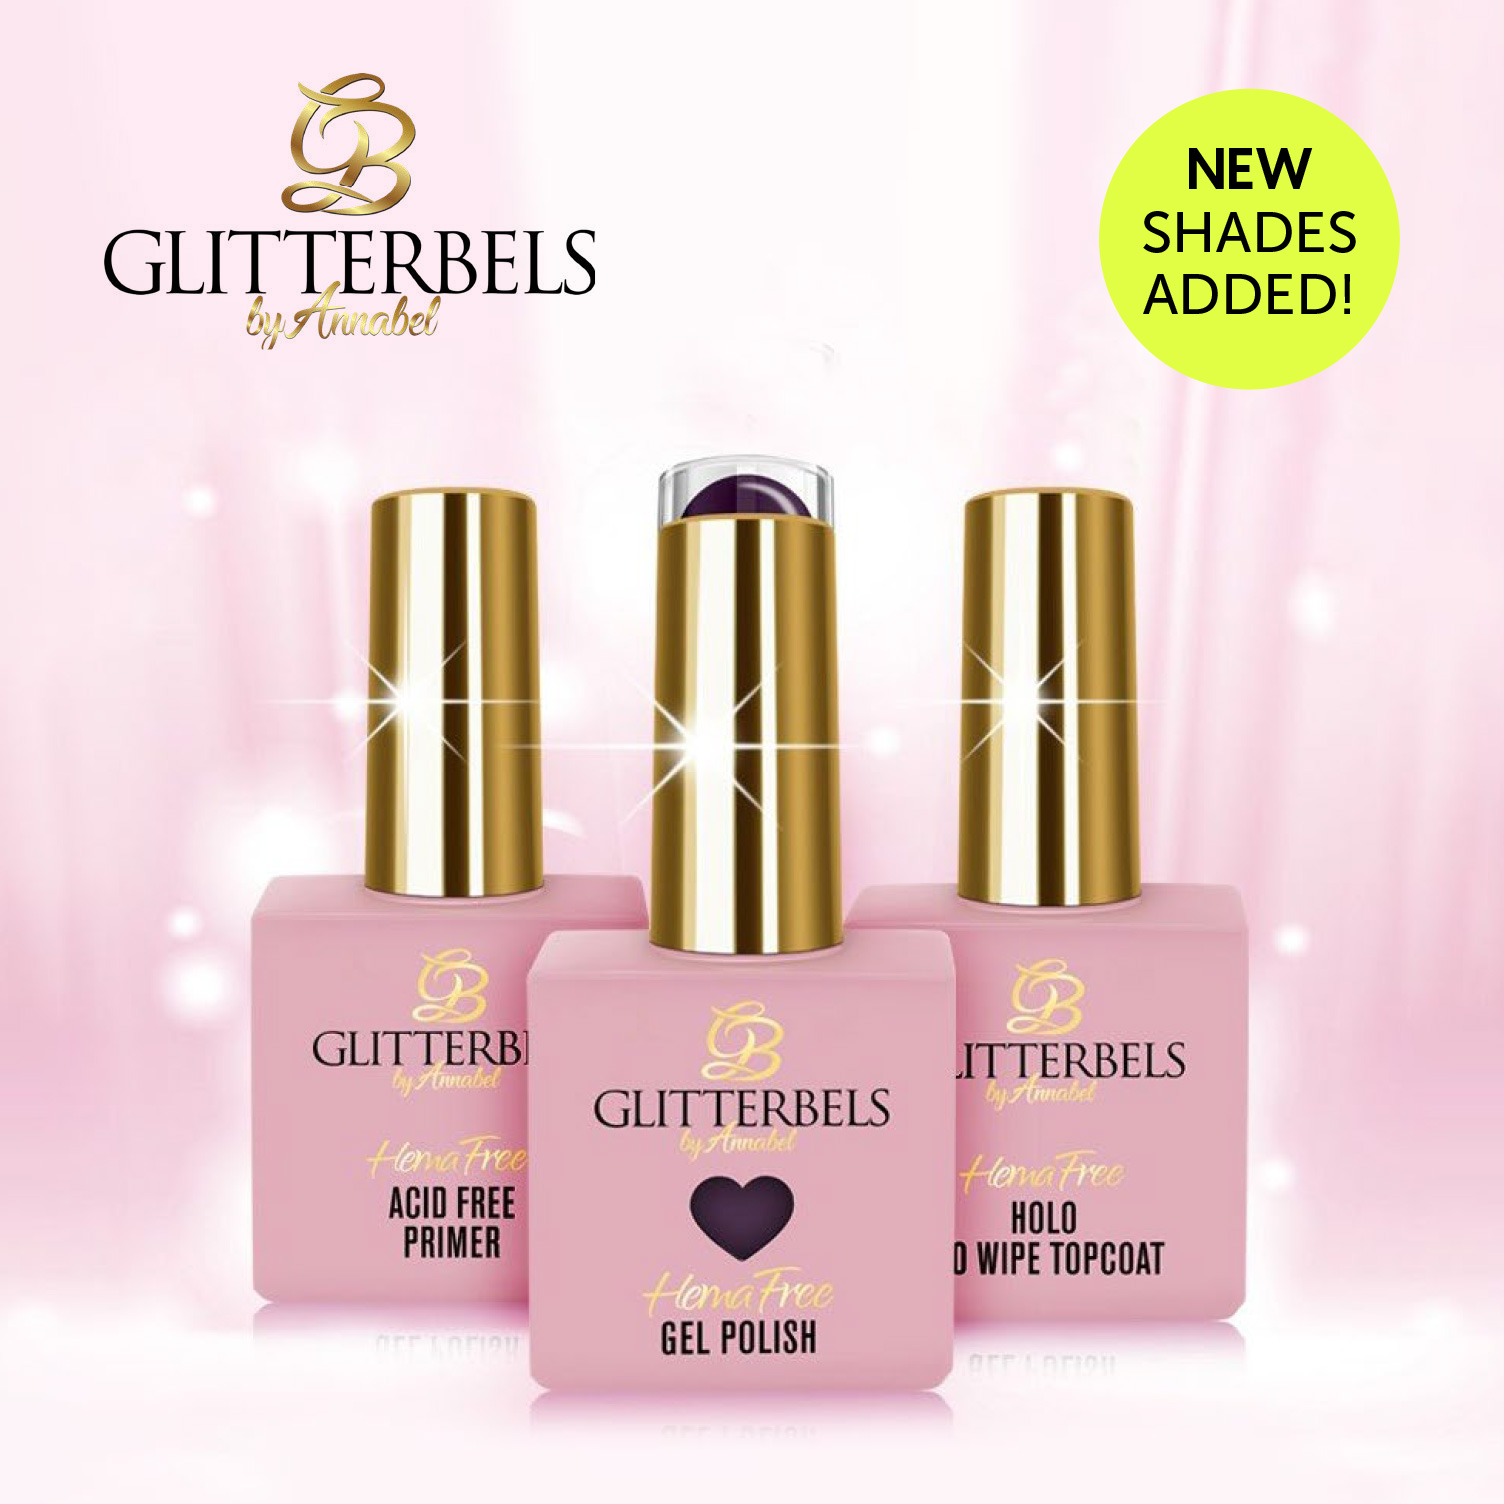 New Shades of Glitterbels Hema Free Gel Polish